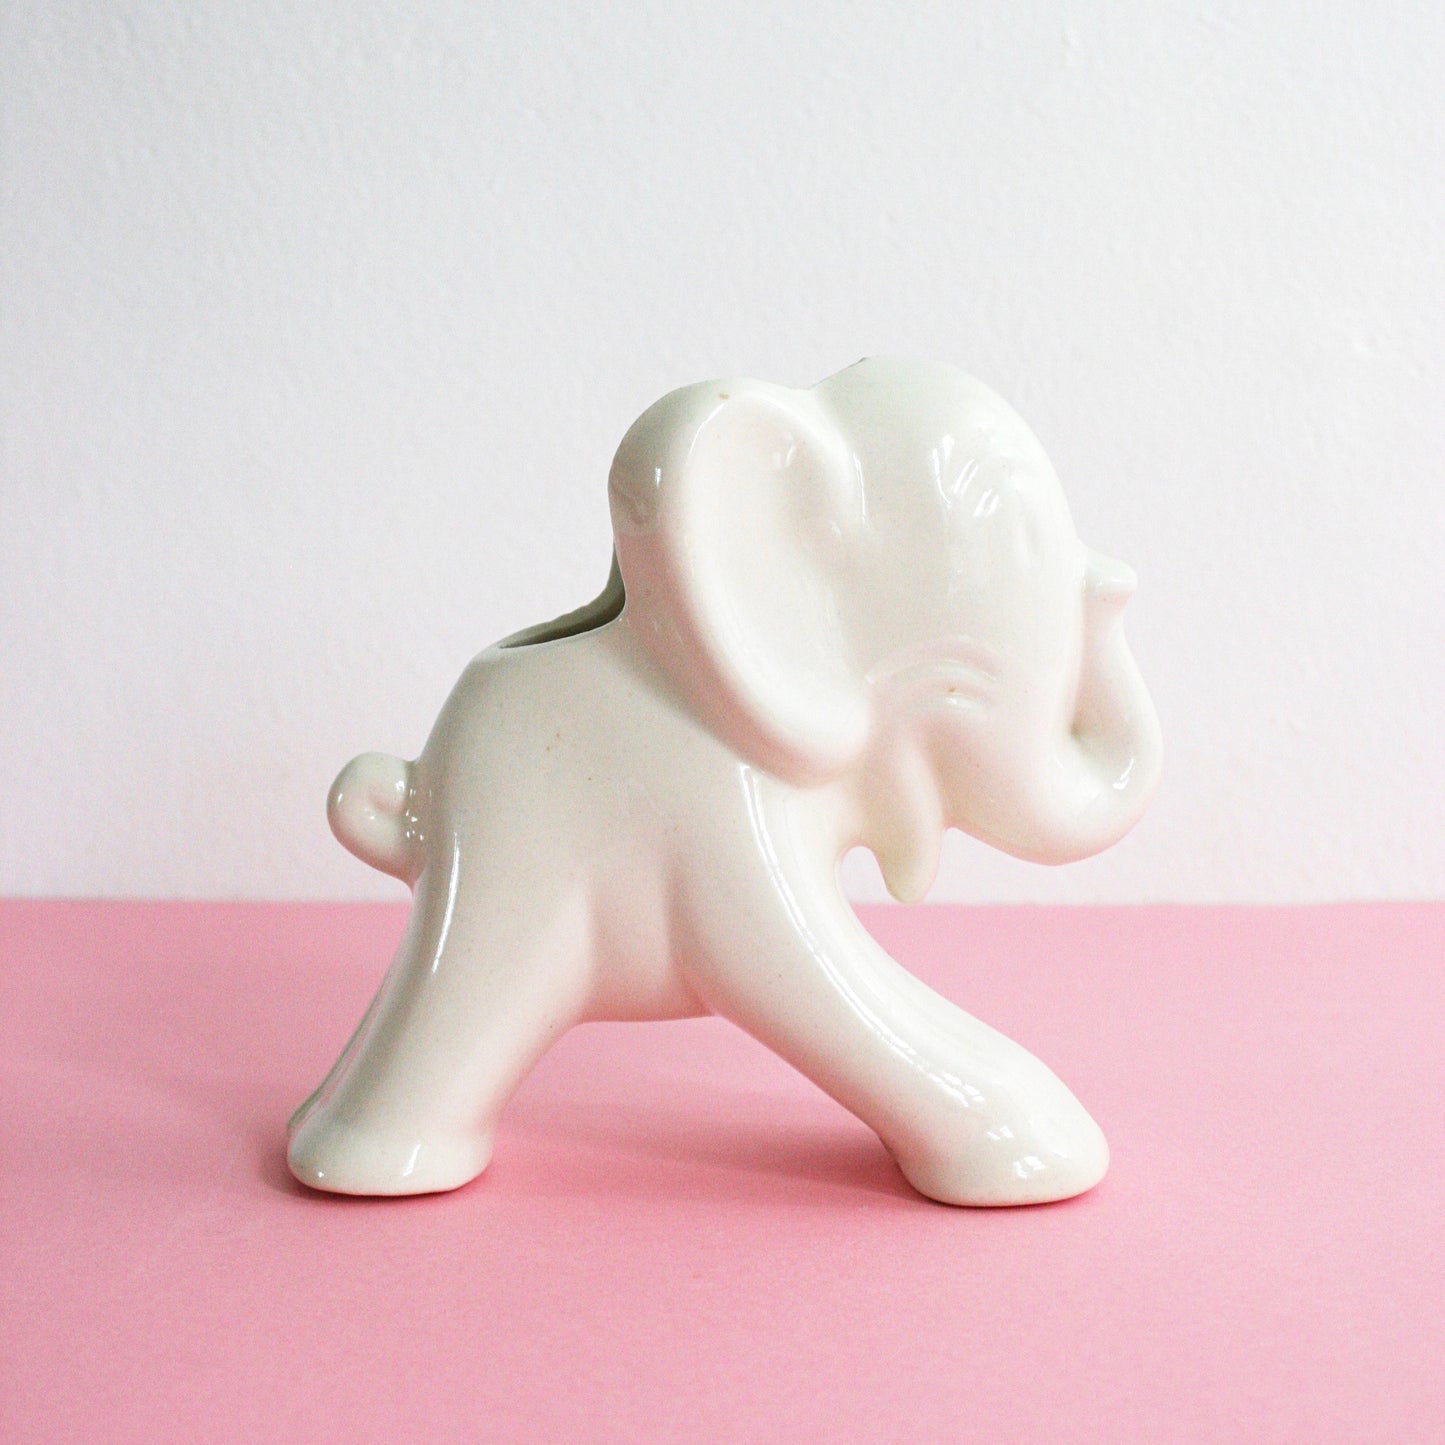 SOLD - Vintage Ceramic Elephant Planter / 1940s Uhl Pottery White Elephant Vase